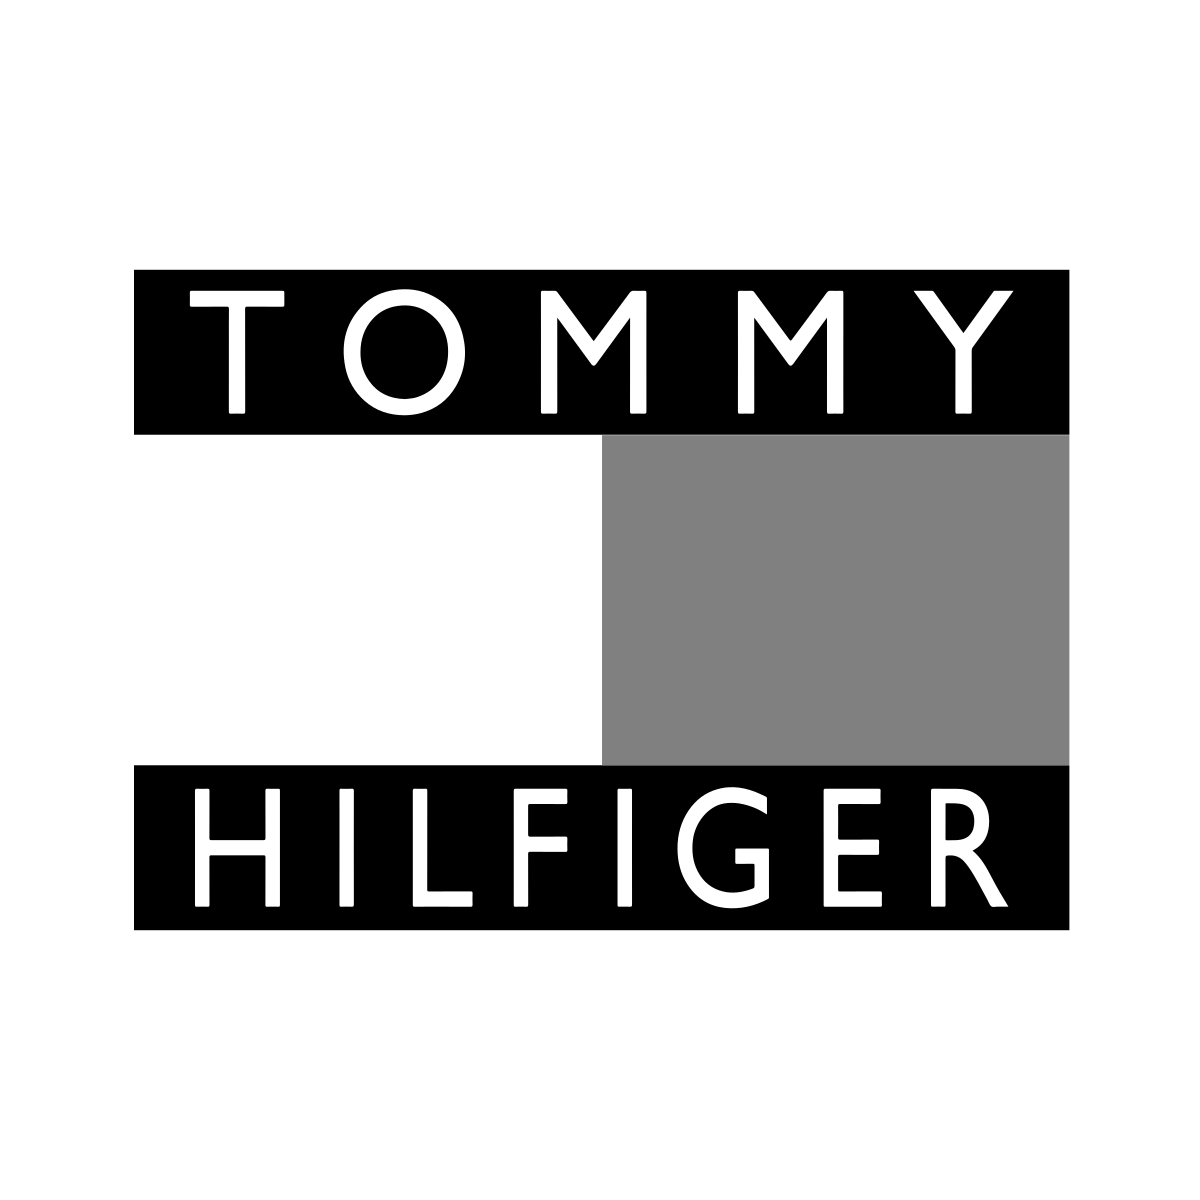 Tommy Hilfiger Png Images PNGEgg | vlr.eng.br